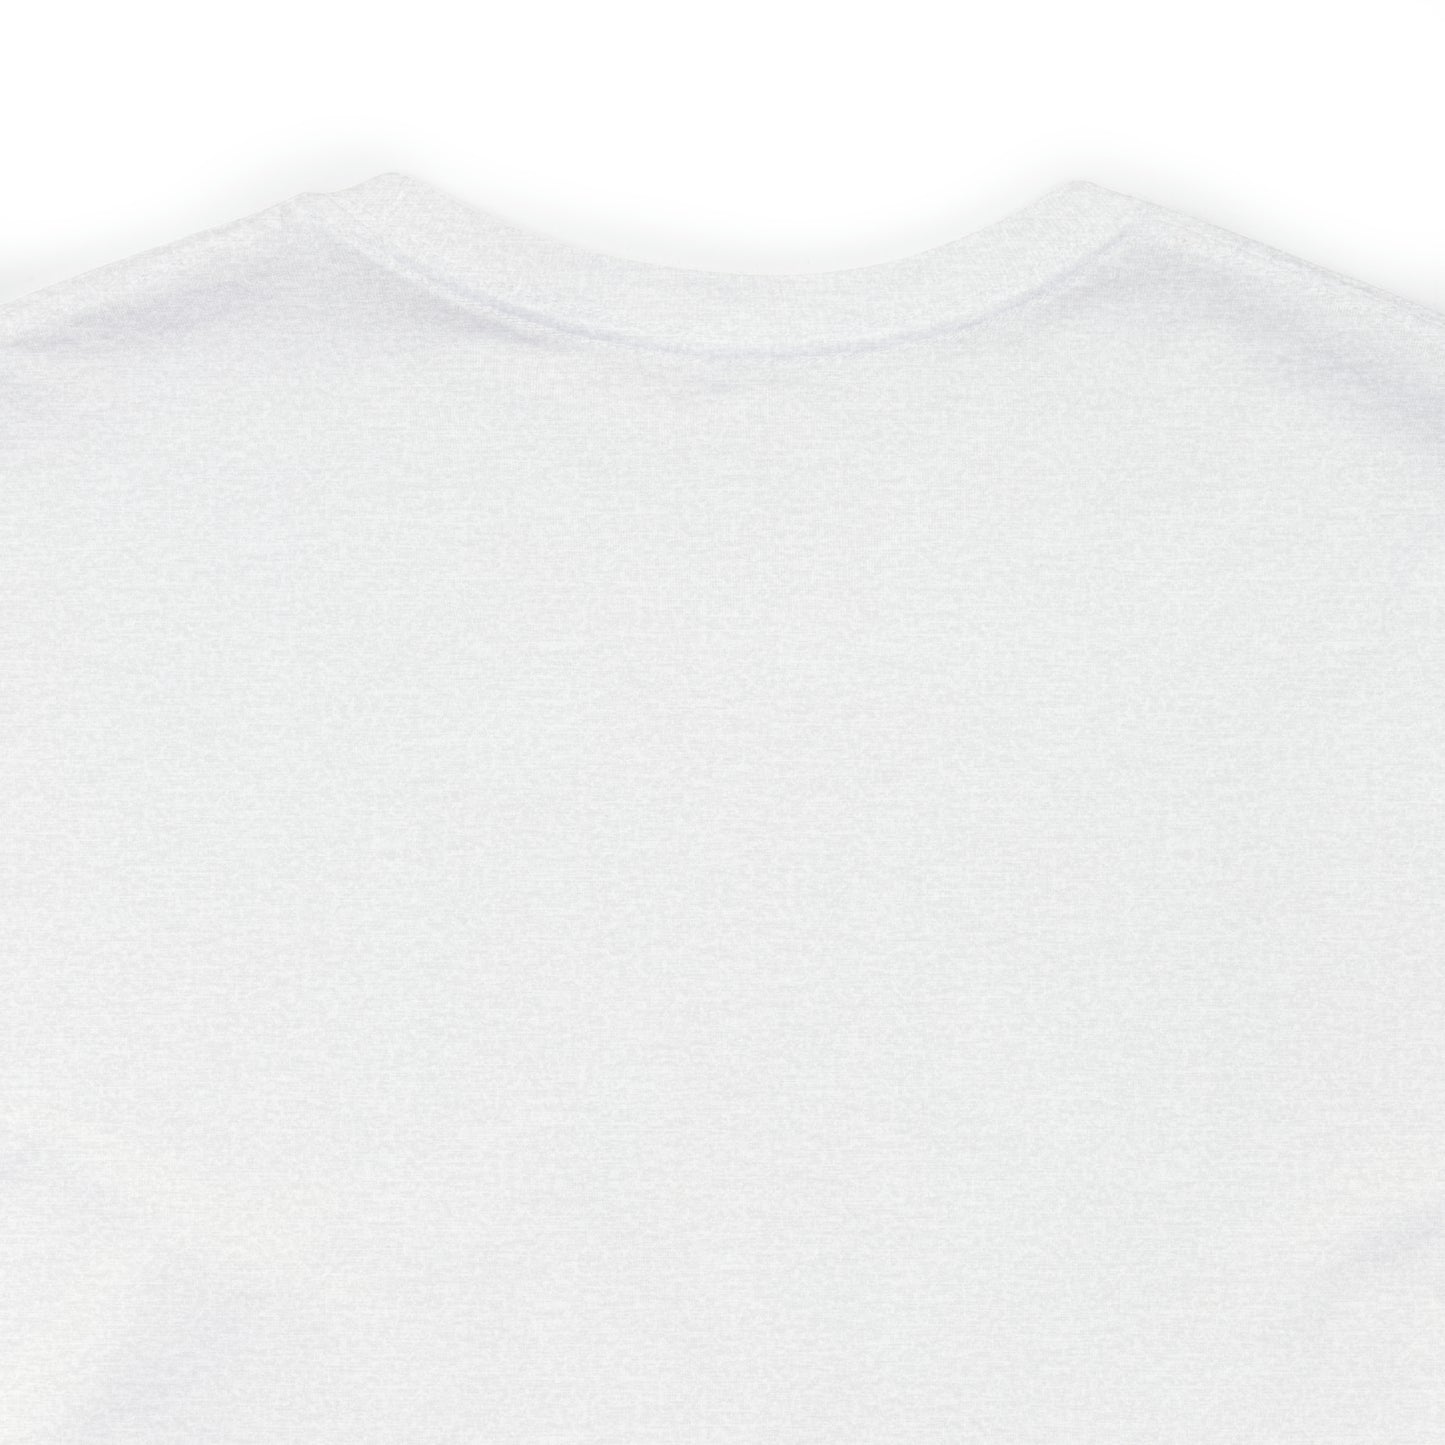 Cape Cod, Mass Pickleball Short Sleeve T-Shirt